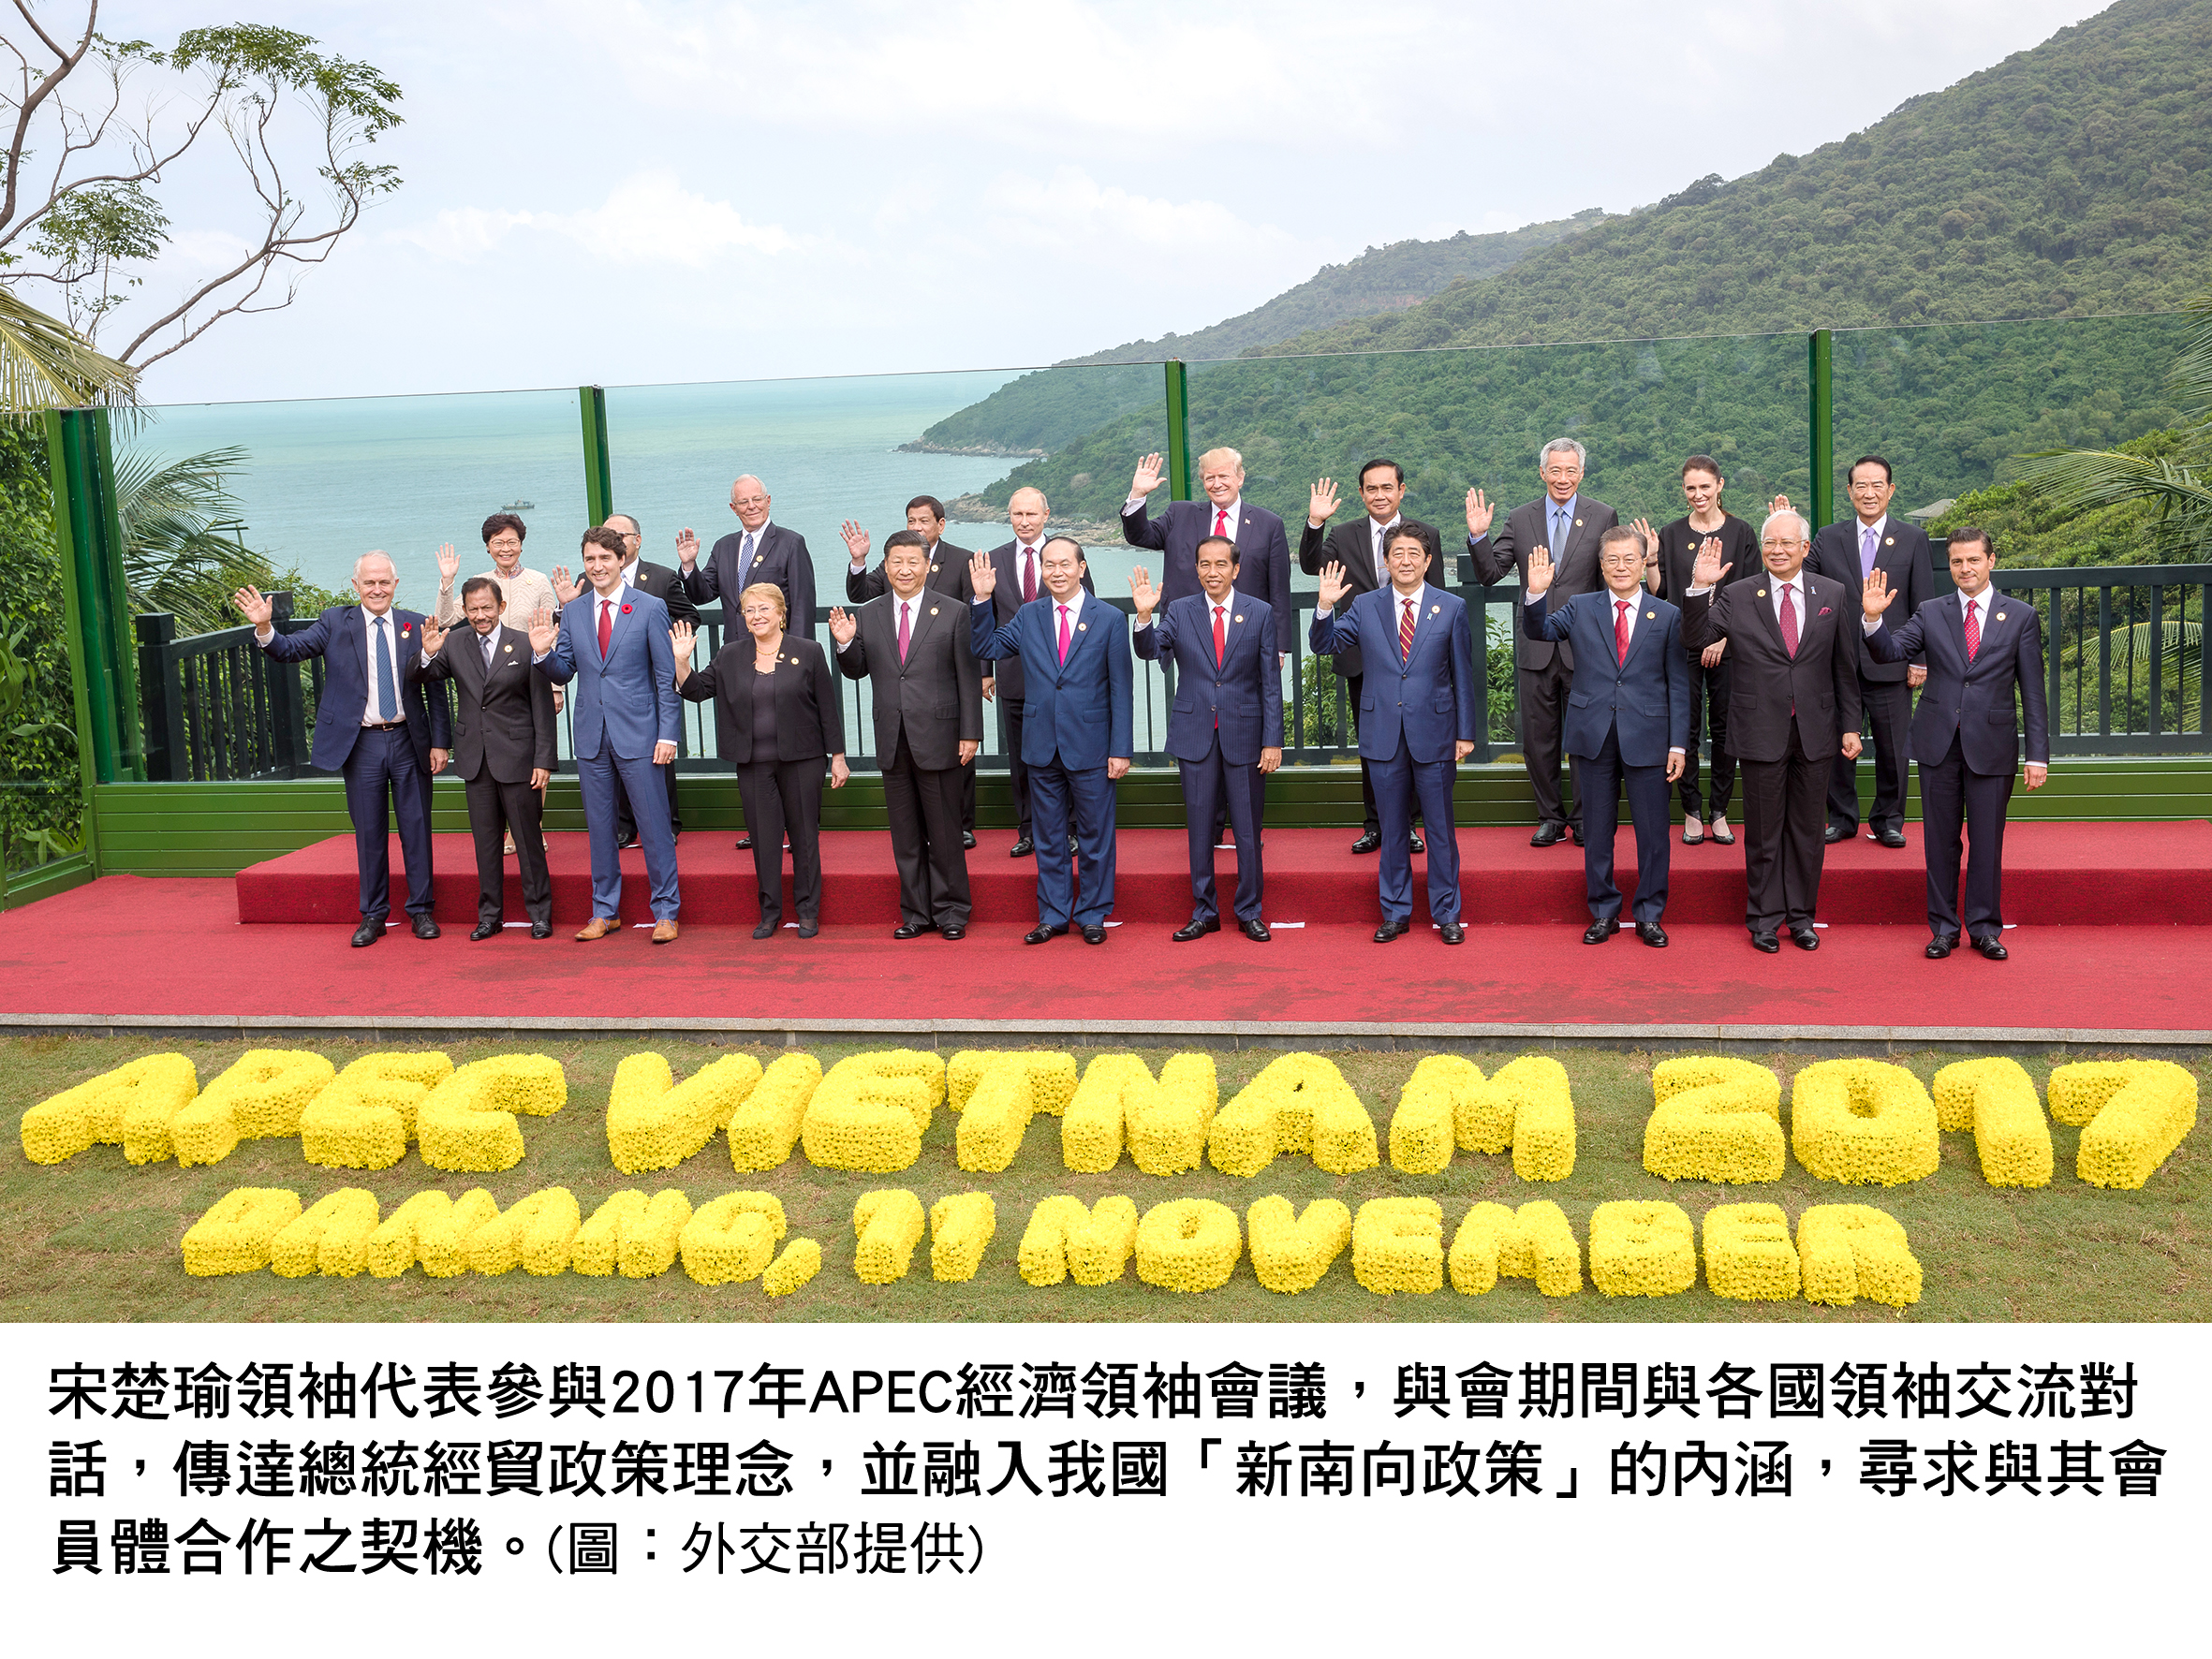 台灣參與2017 APEC會議成果